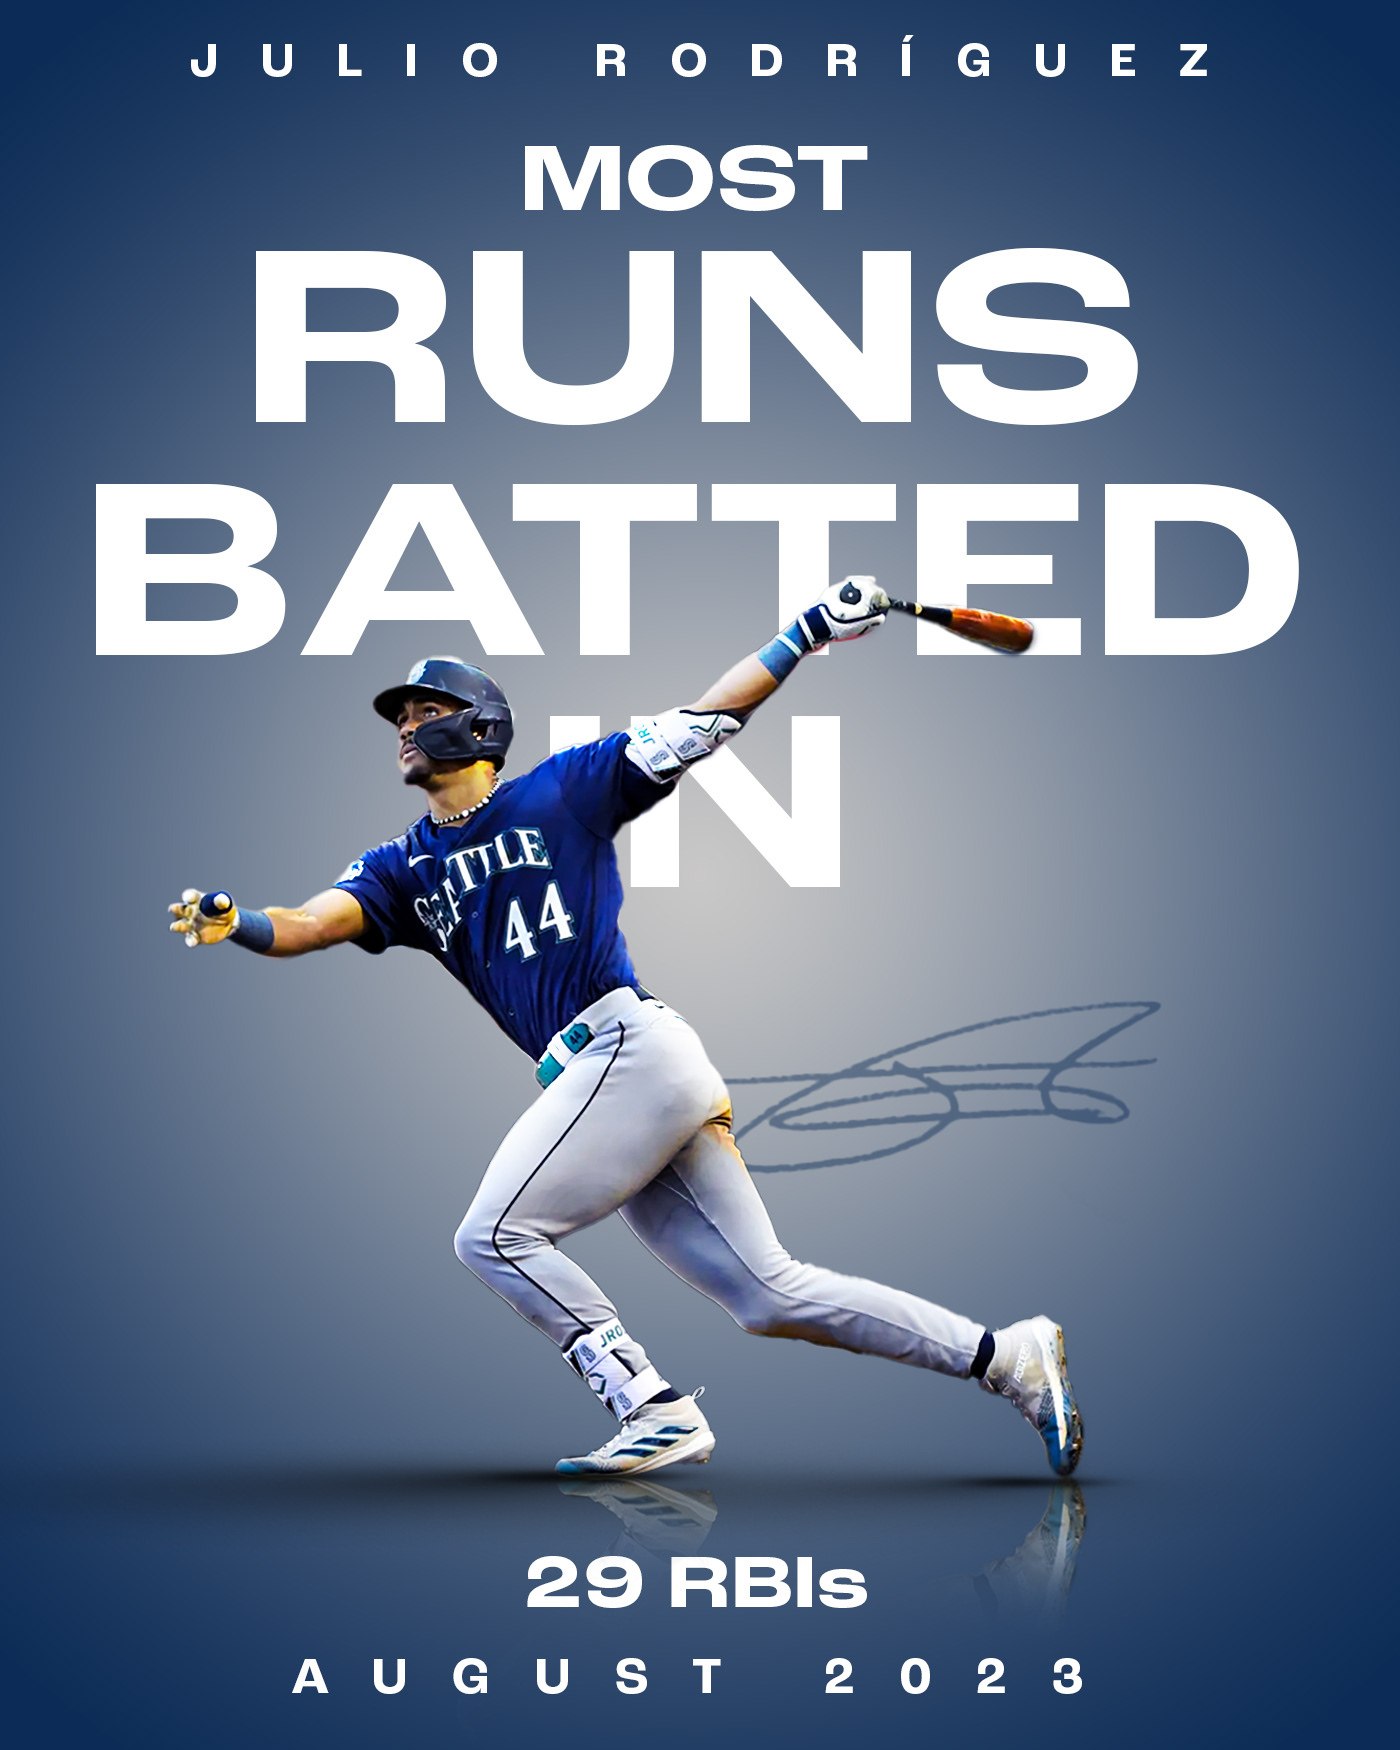 mlb Major league baseball stats baseball sports Sports Design sports graphics graphic design  Digital Art  photoshop